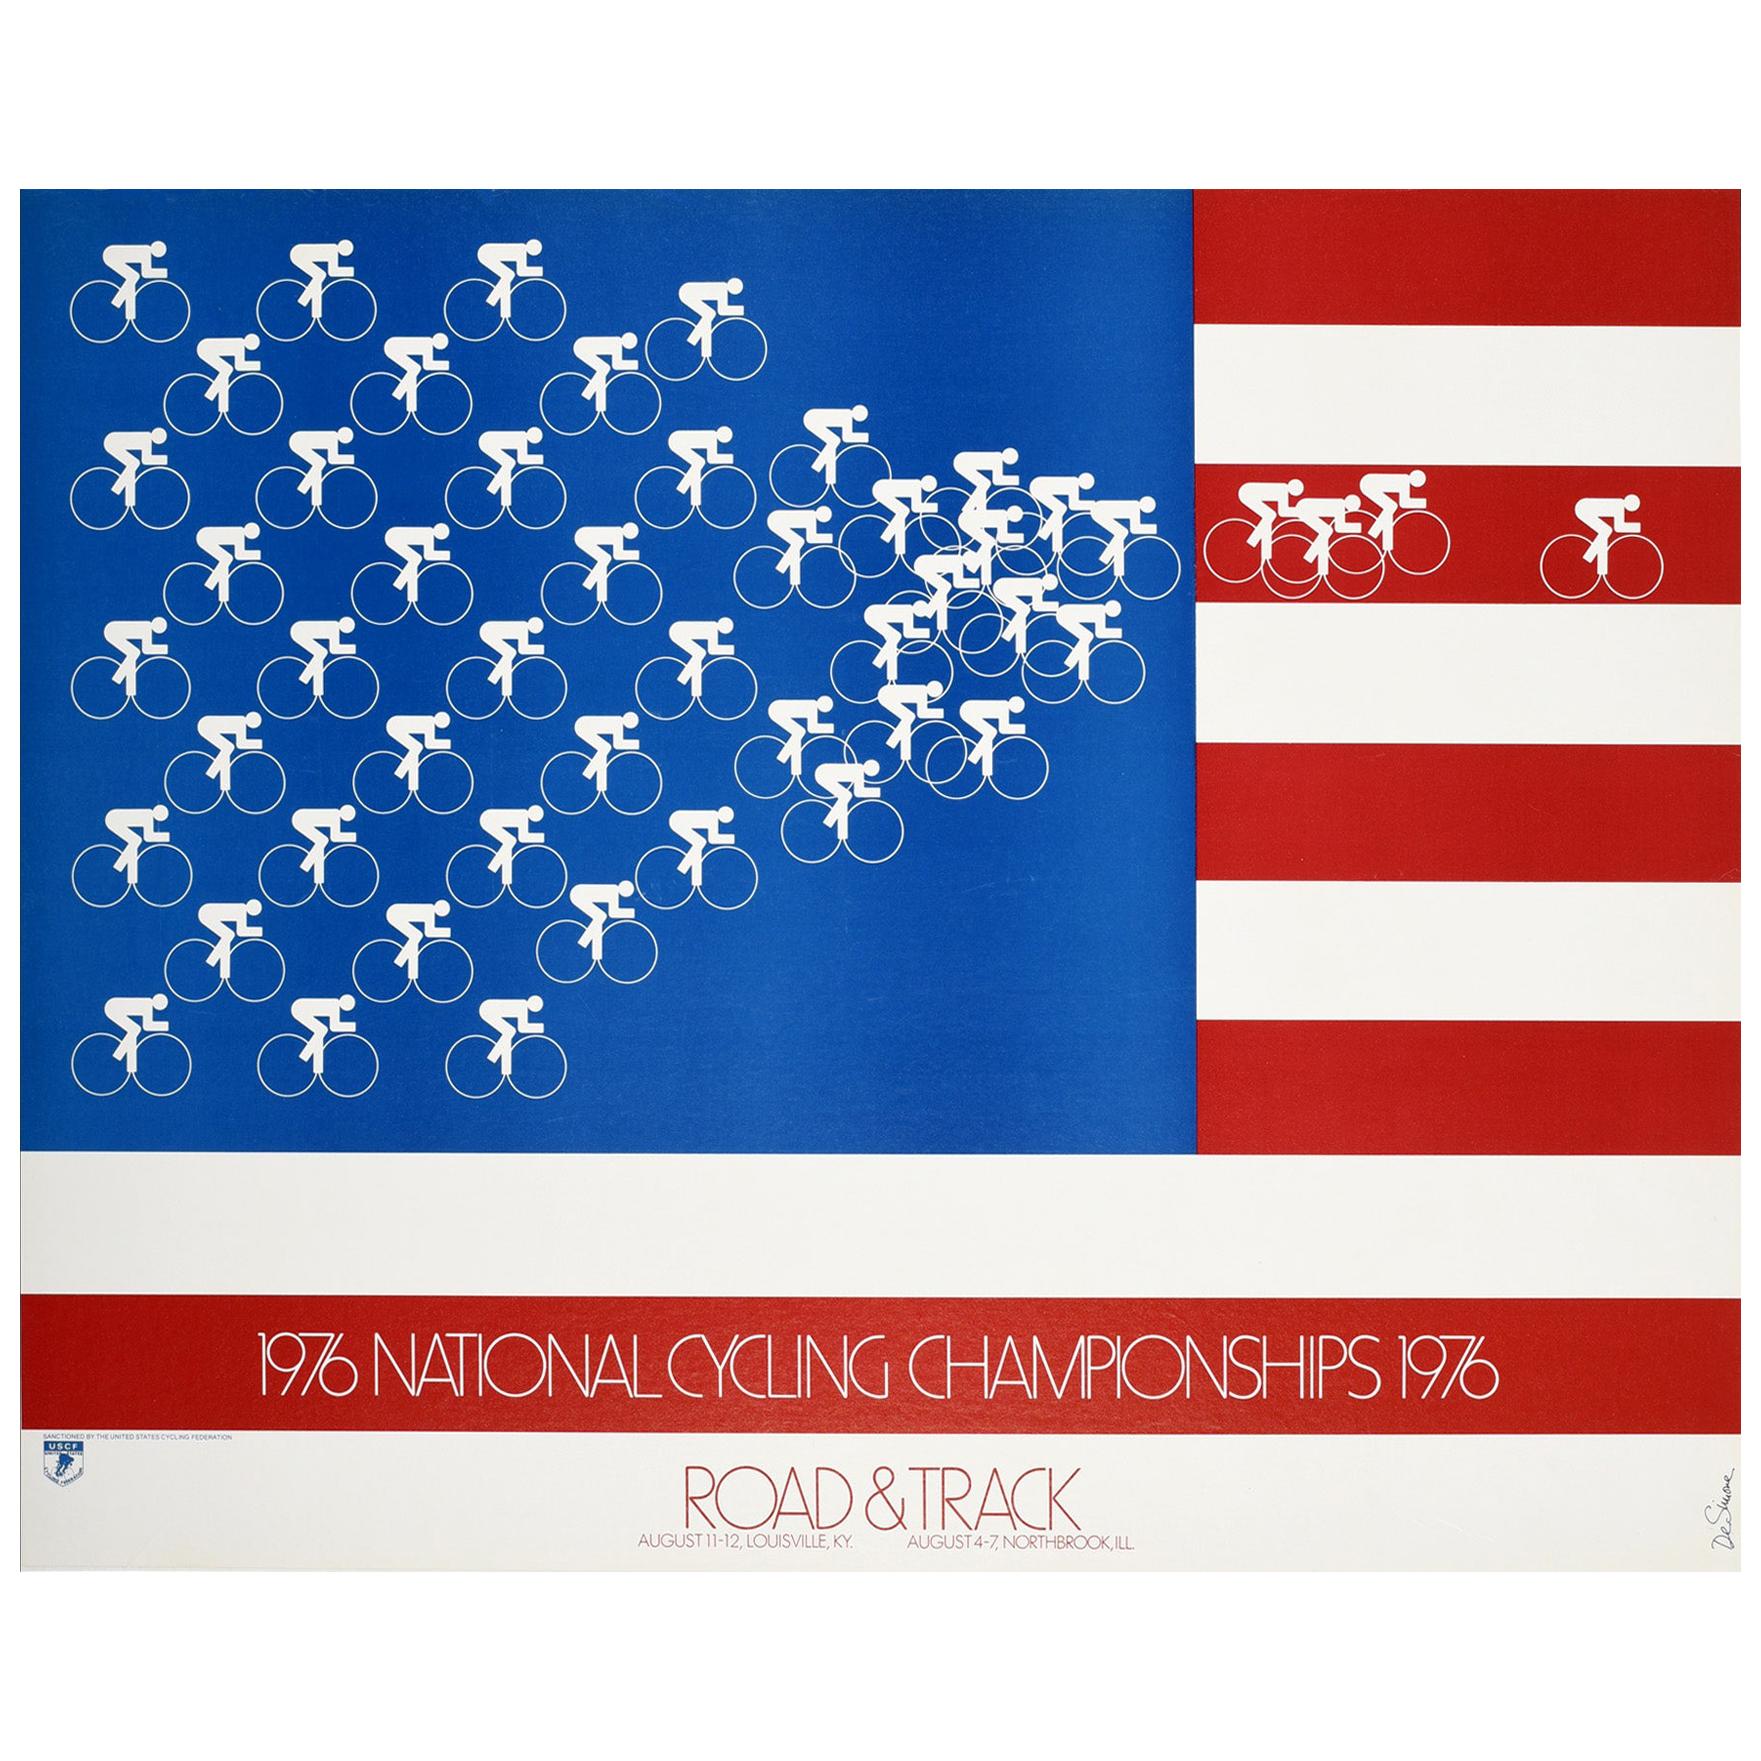 Original Vintage Poster 1976 National Cycling Championships Sport US Flag Design